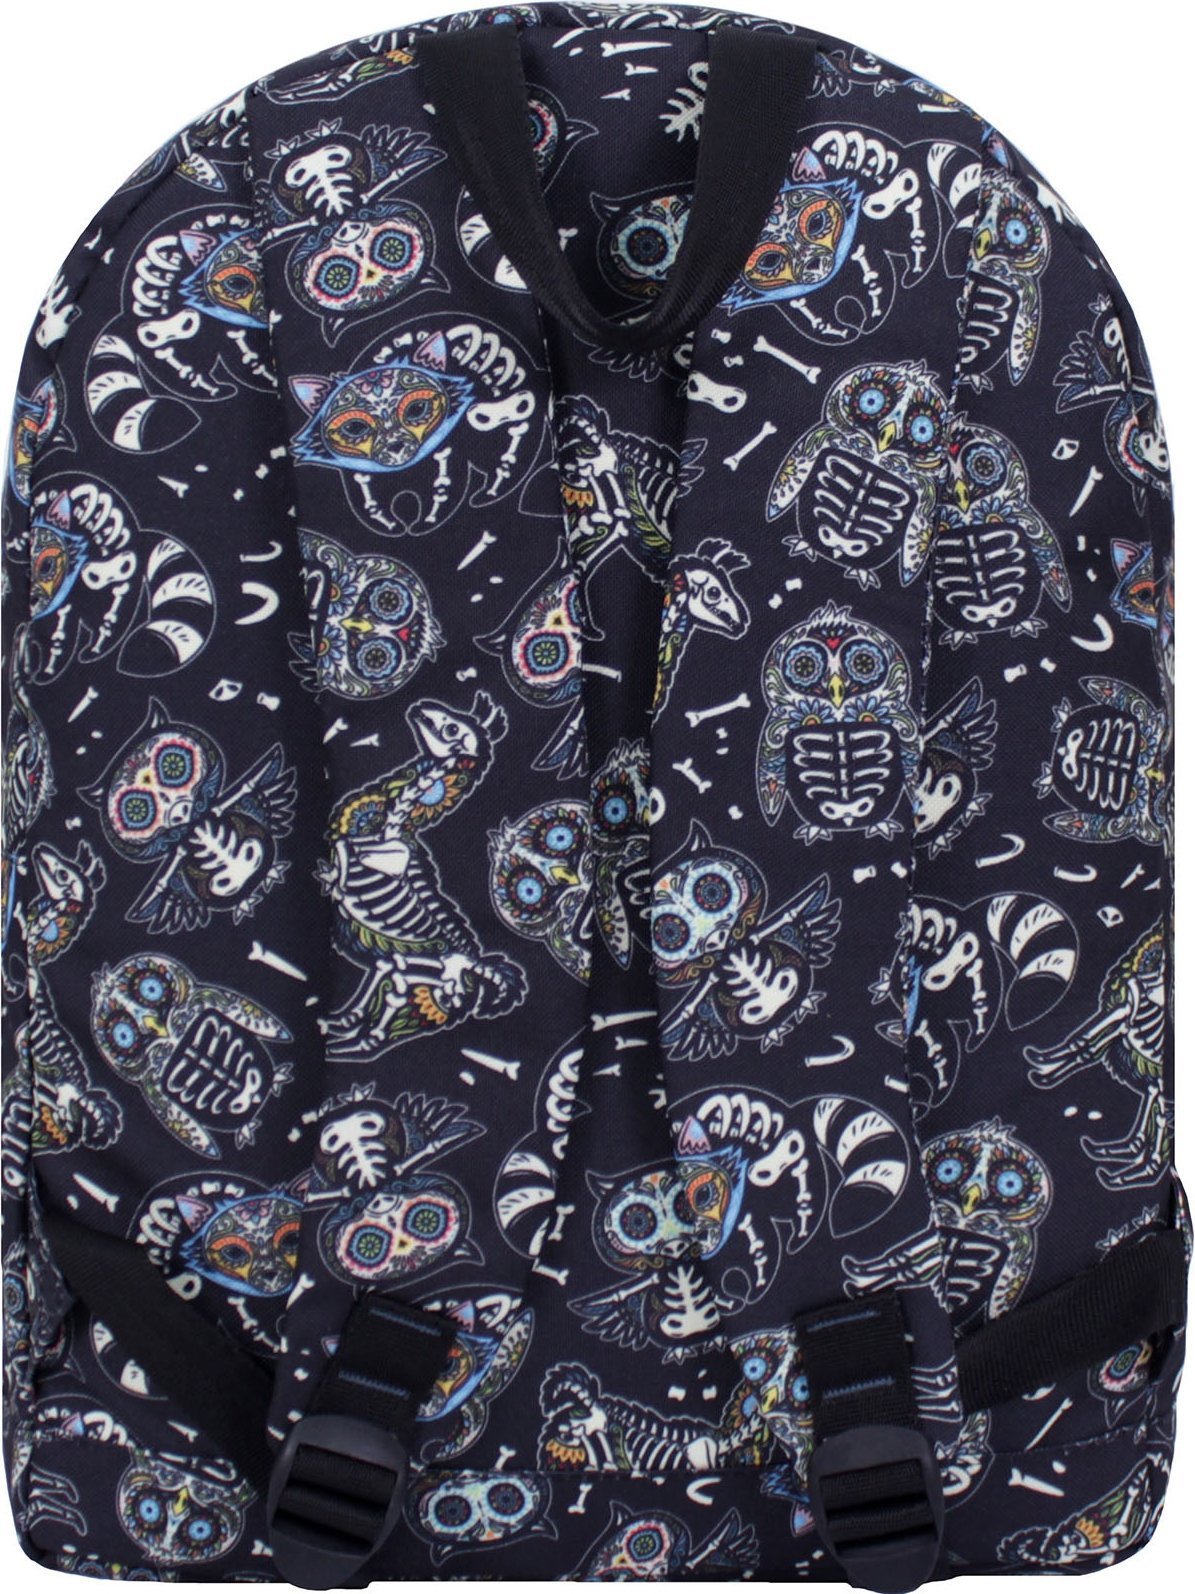 Повседневный рюкзак для подростков из текстиля с принтом Bagland (53491)